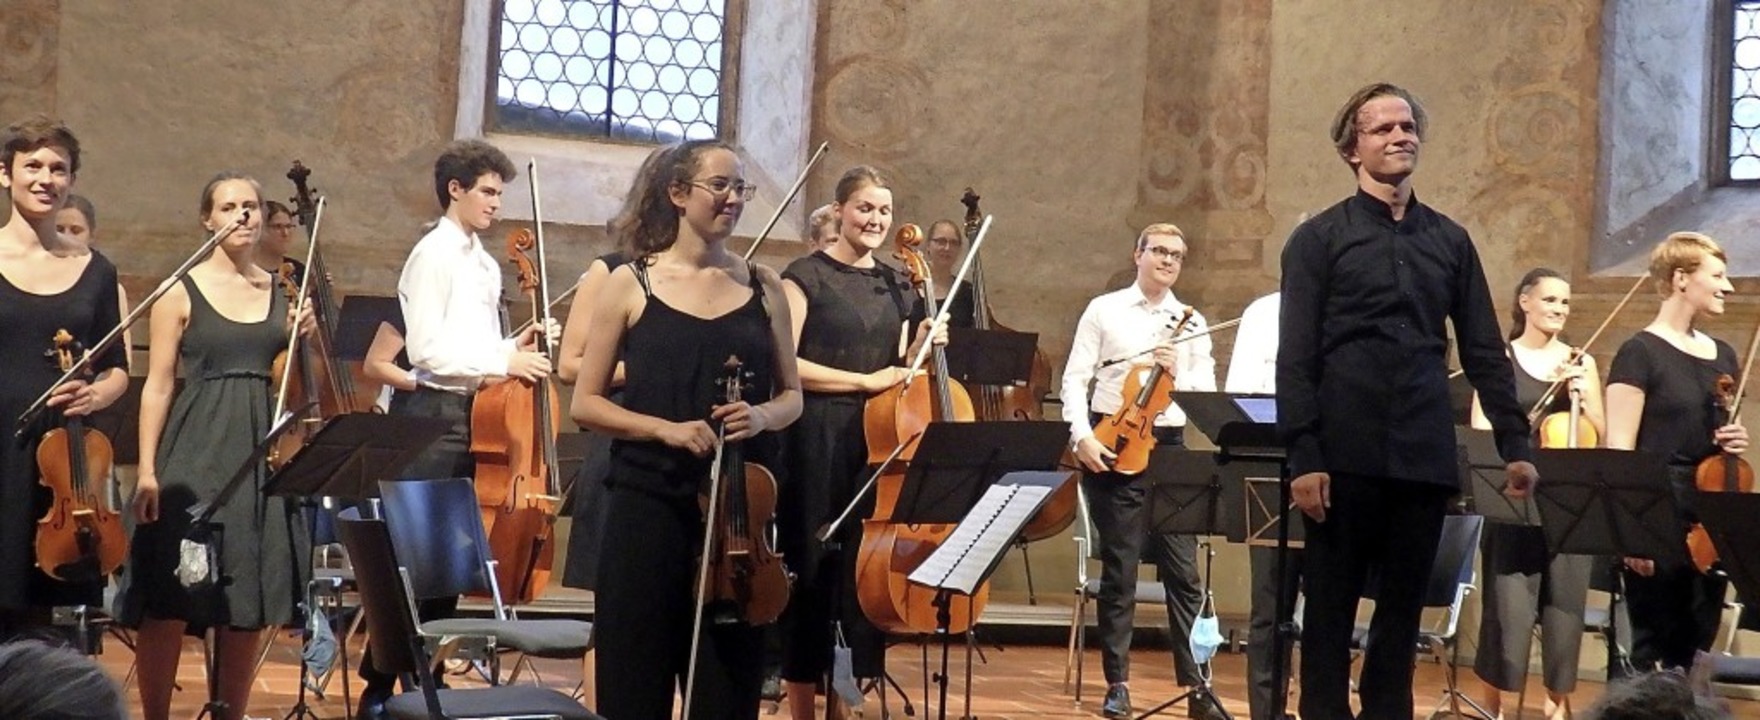 Lauten Beifall gab es für die Musiker und den Dirigenten Valentin Egel.  | Foto: Bianca Flier